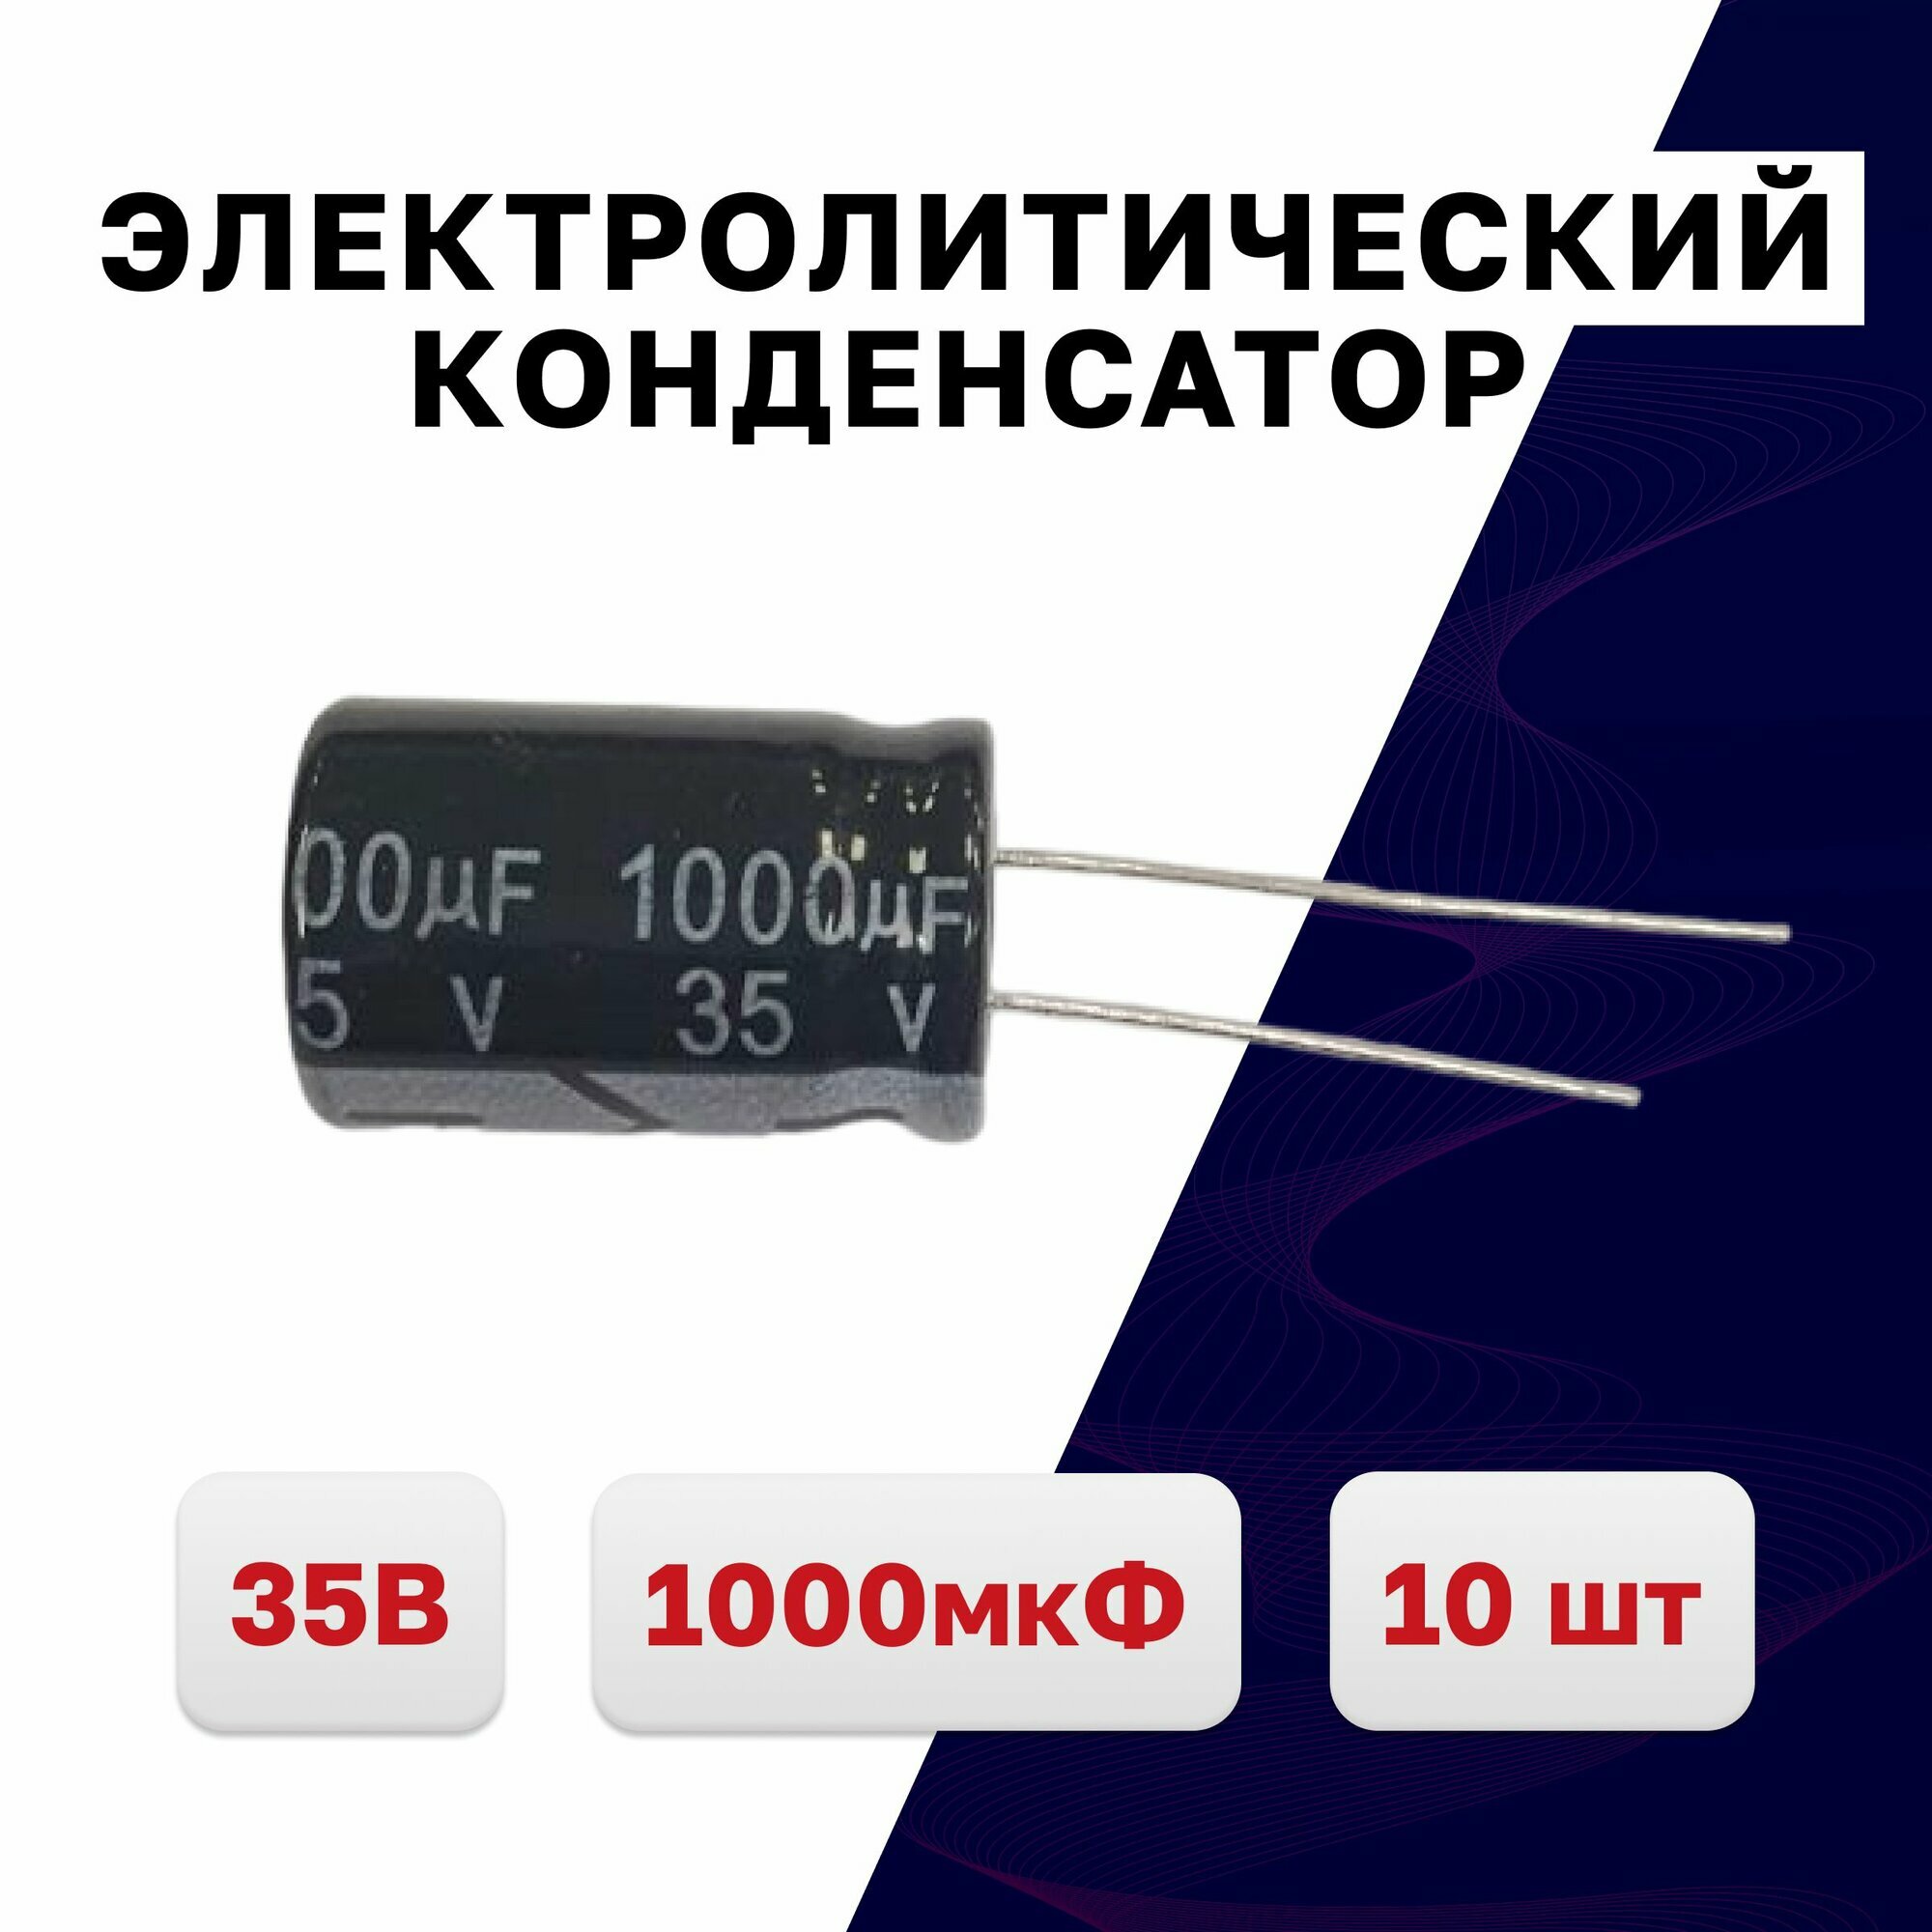 Конденсатор электролитический 1000мкФ 35В 13x20, 10 шт.